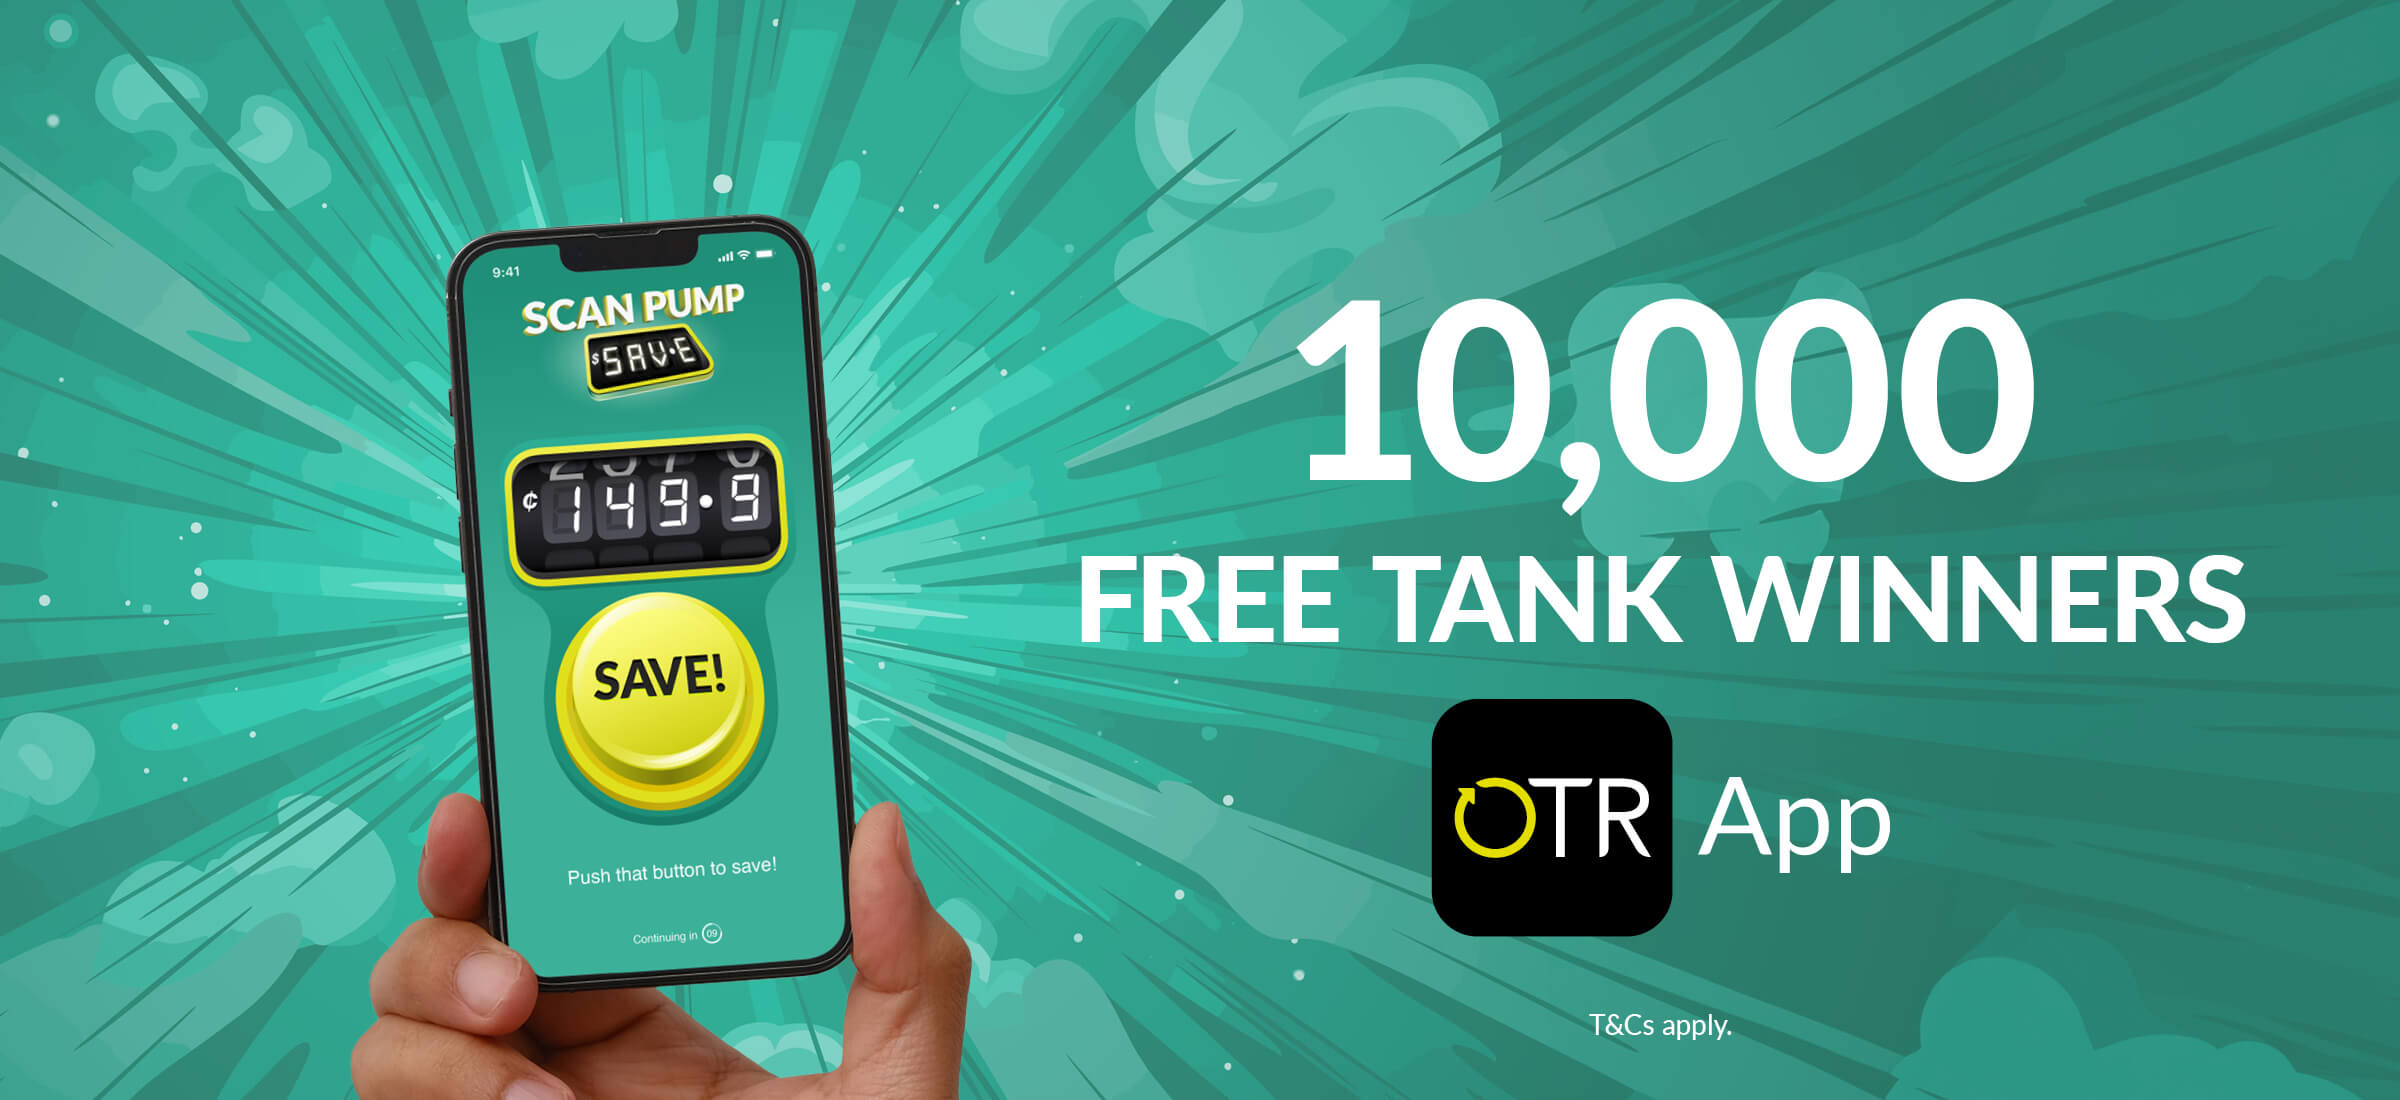 OTR App - 10,000 Free Tank Winners